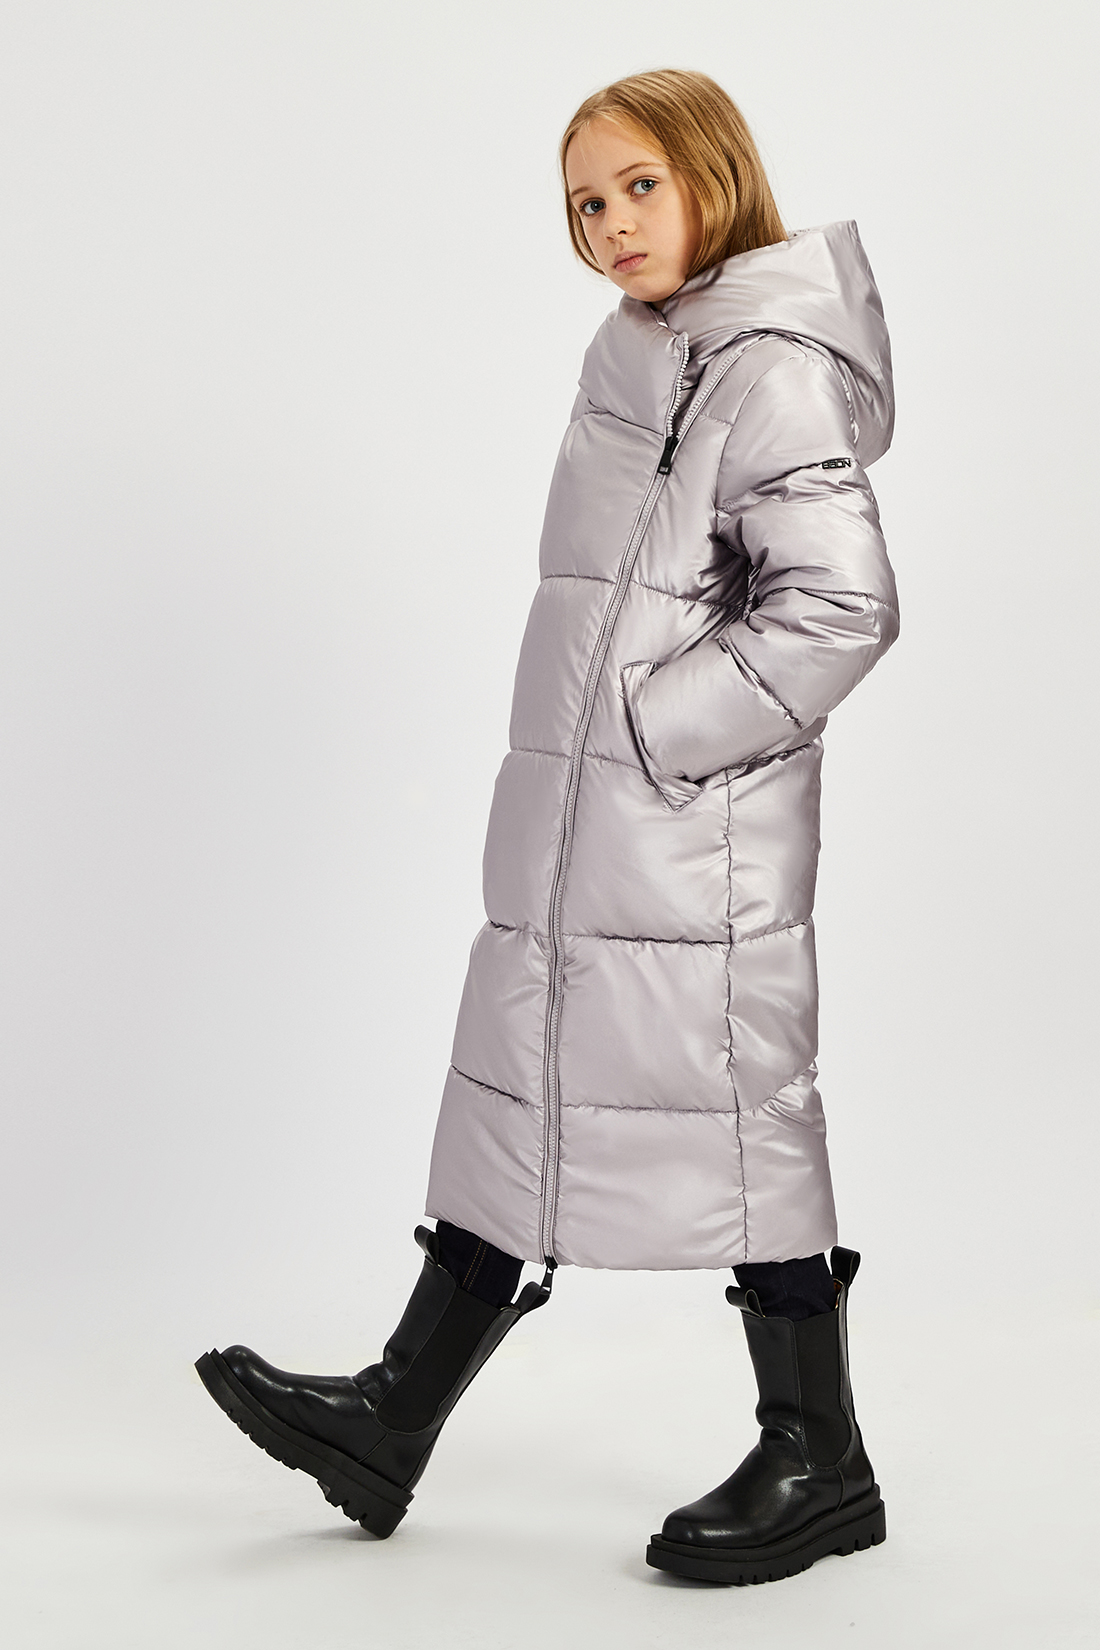 Пальто детское Baon BK041809 цвет серебристый, размер 146